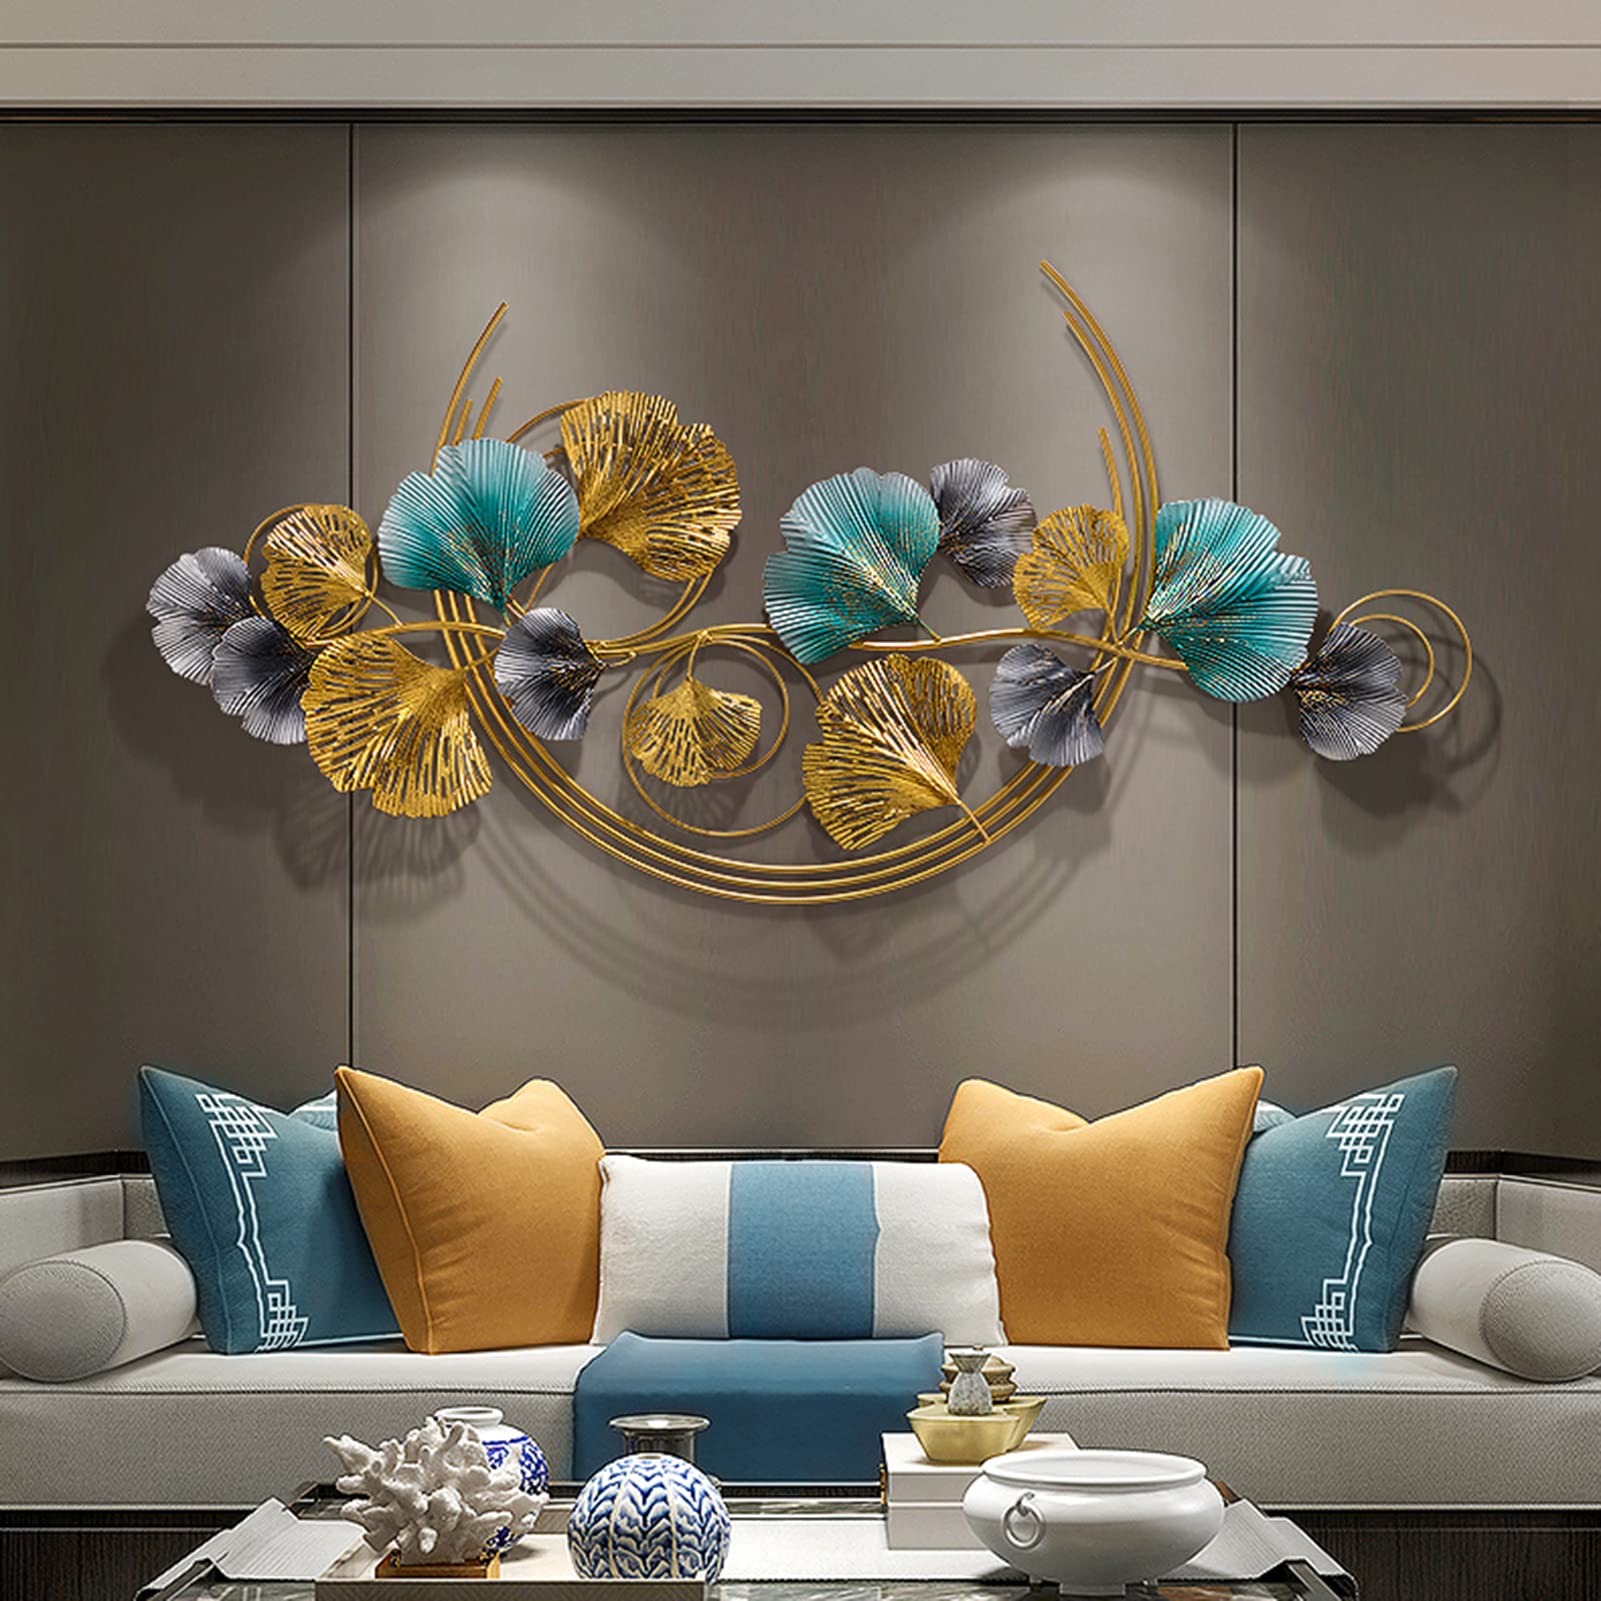 STZYY Luxus Modern Wanddekoration Wohnzimmer, Handgemachte 3D Wandbild''Ginkgo Leaf'' aus Metall, Large Hängende Wandschmuck für Schlafzimmer, Esszimmer, Wandverzierung, Deko-Objekt(Size:120X60CM)